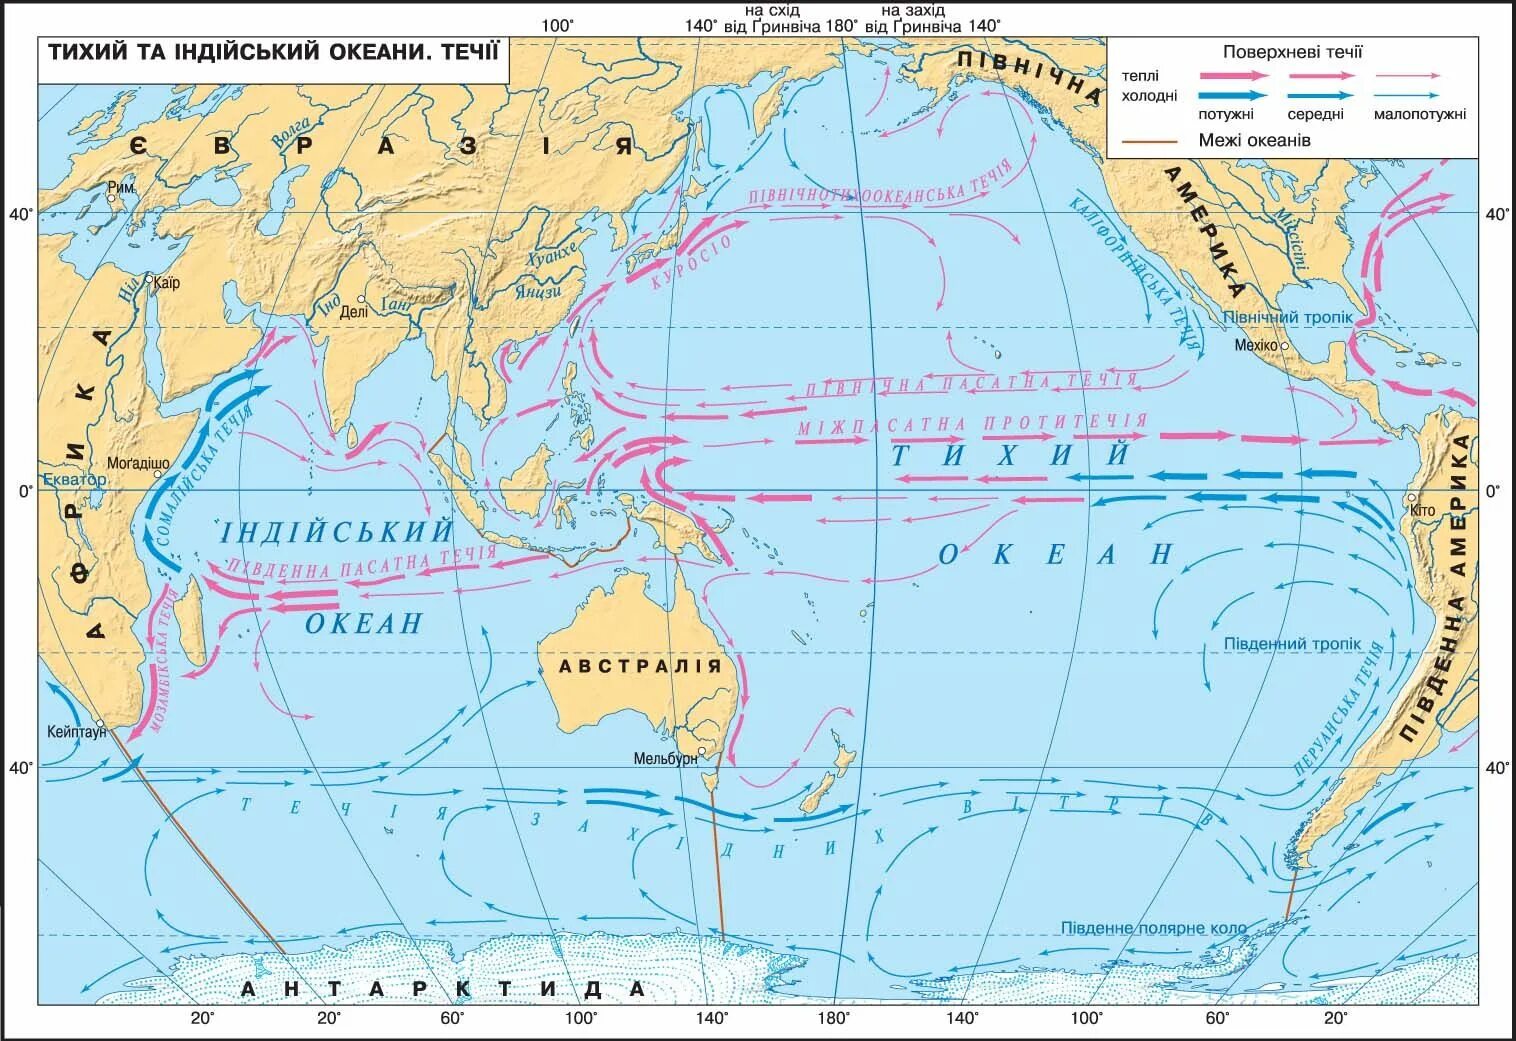 Тихий океан условные знаки на карте. Карта течений Тихого океана. Тихий океан карта 7 класс атлас холодные и теплые течения. Течения Тихого океана 7 класс. Течения Тихого океана теплые и холодные на карте 7.